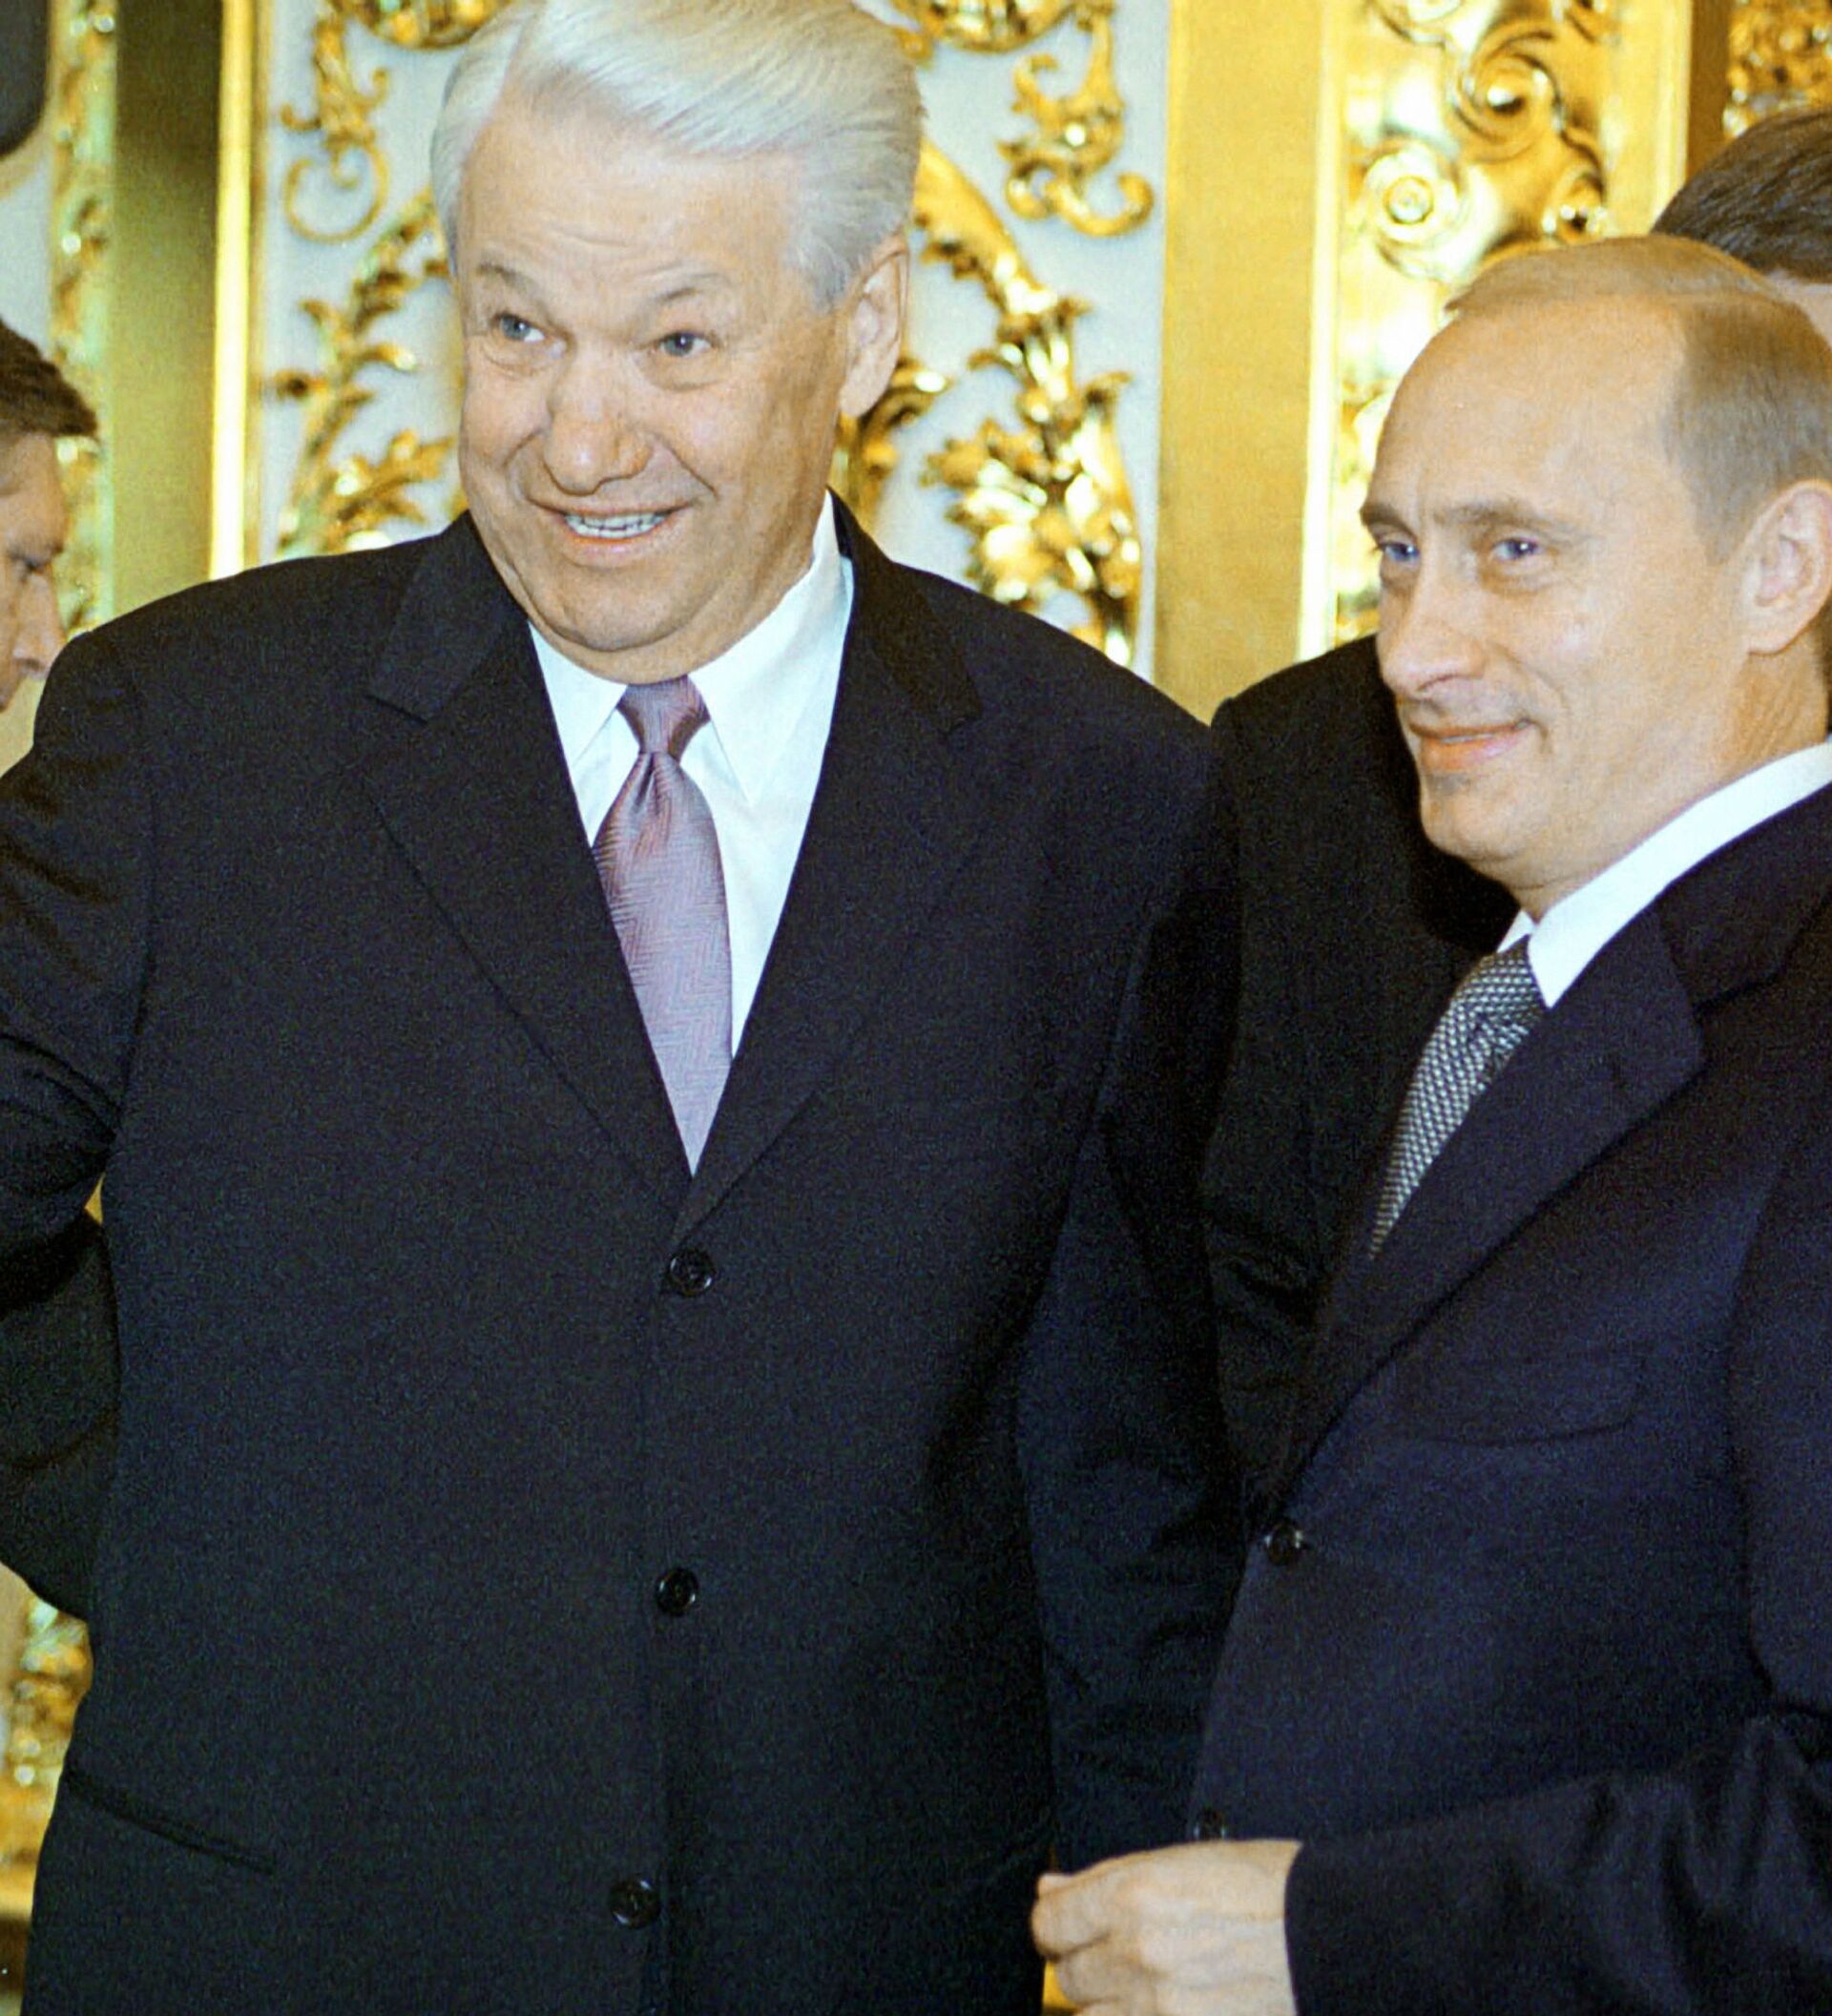 Валентин Юмашев: почему Ельцин выбрал Путина своим преемником?